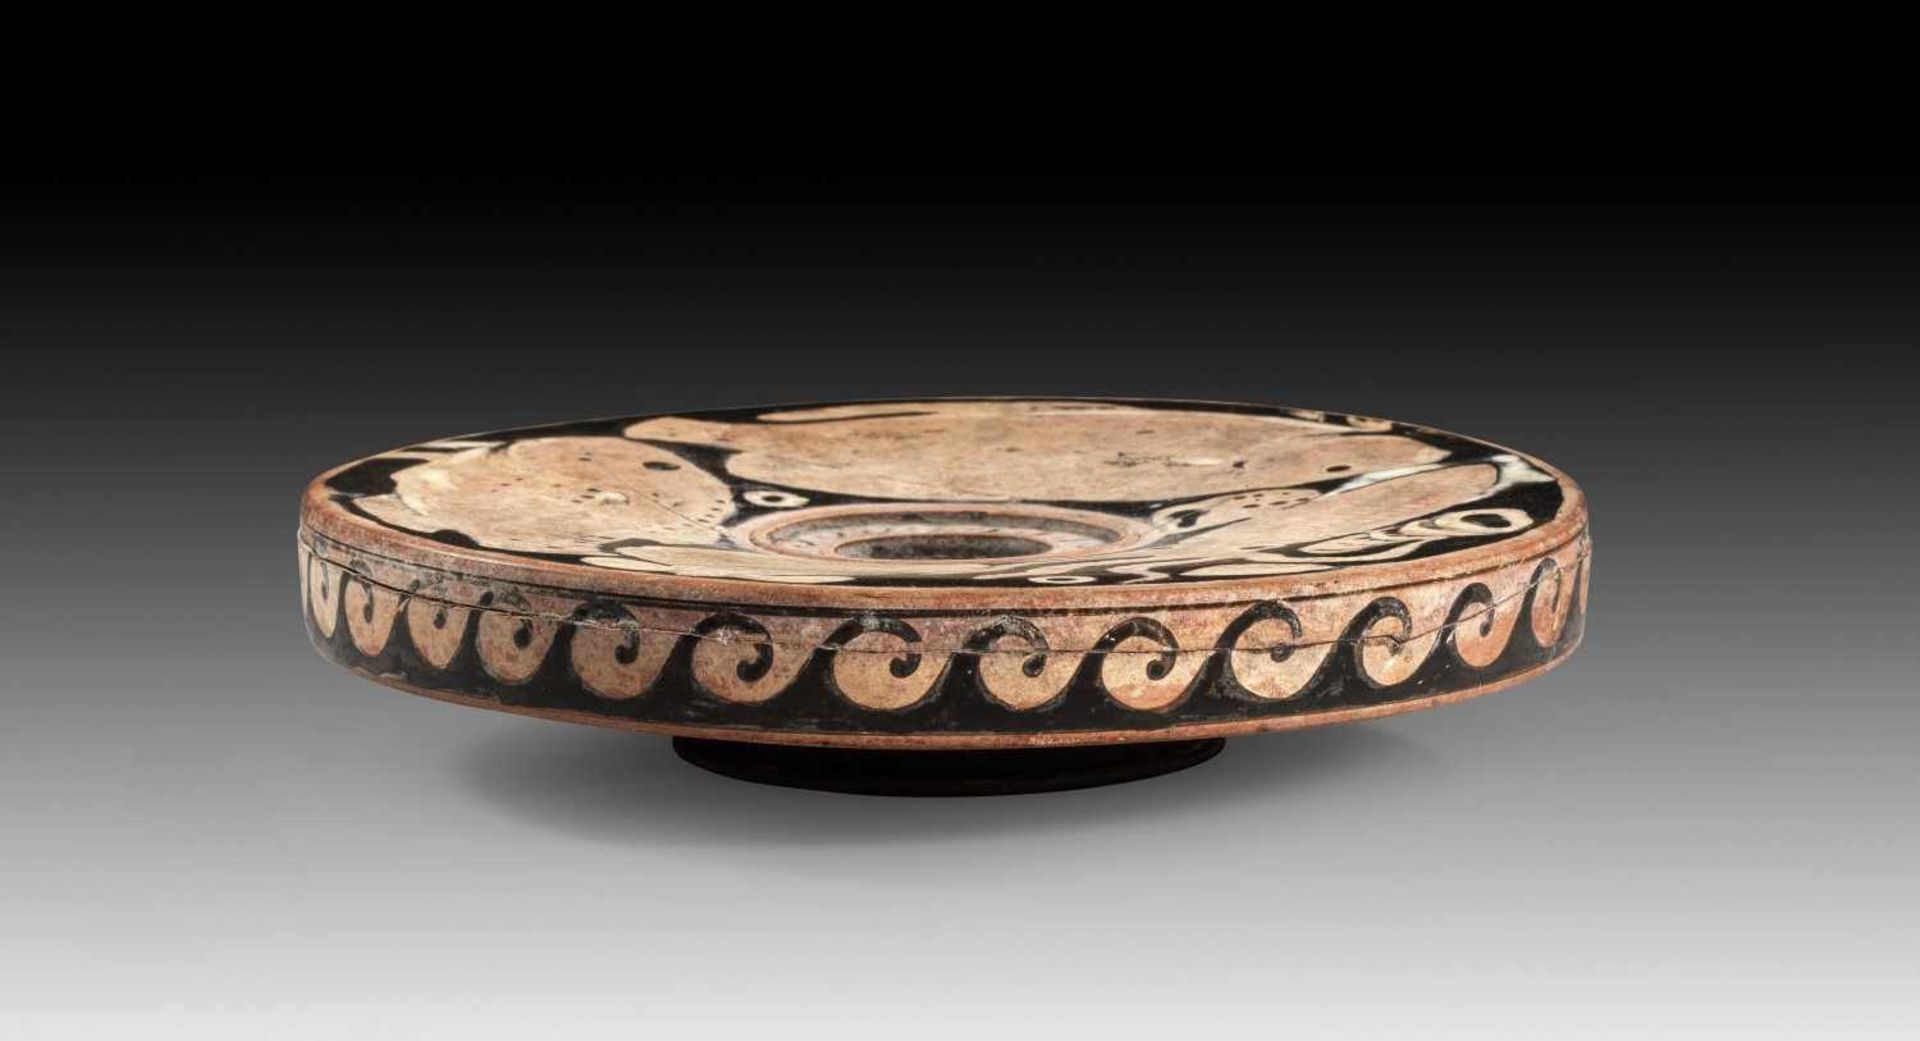 Apulischer Fischteller. Tarent, 340 - 330 v. Chr. H 5,9cm, ø 25,9cm. Teller mit überhängendem